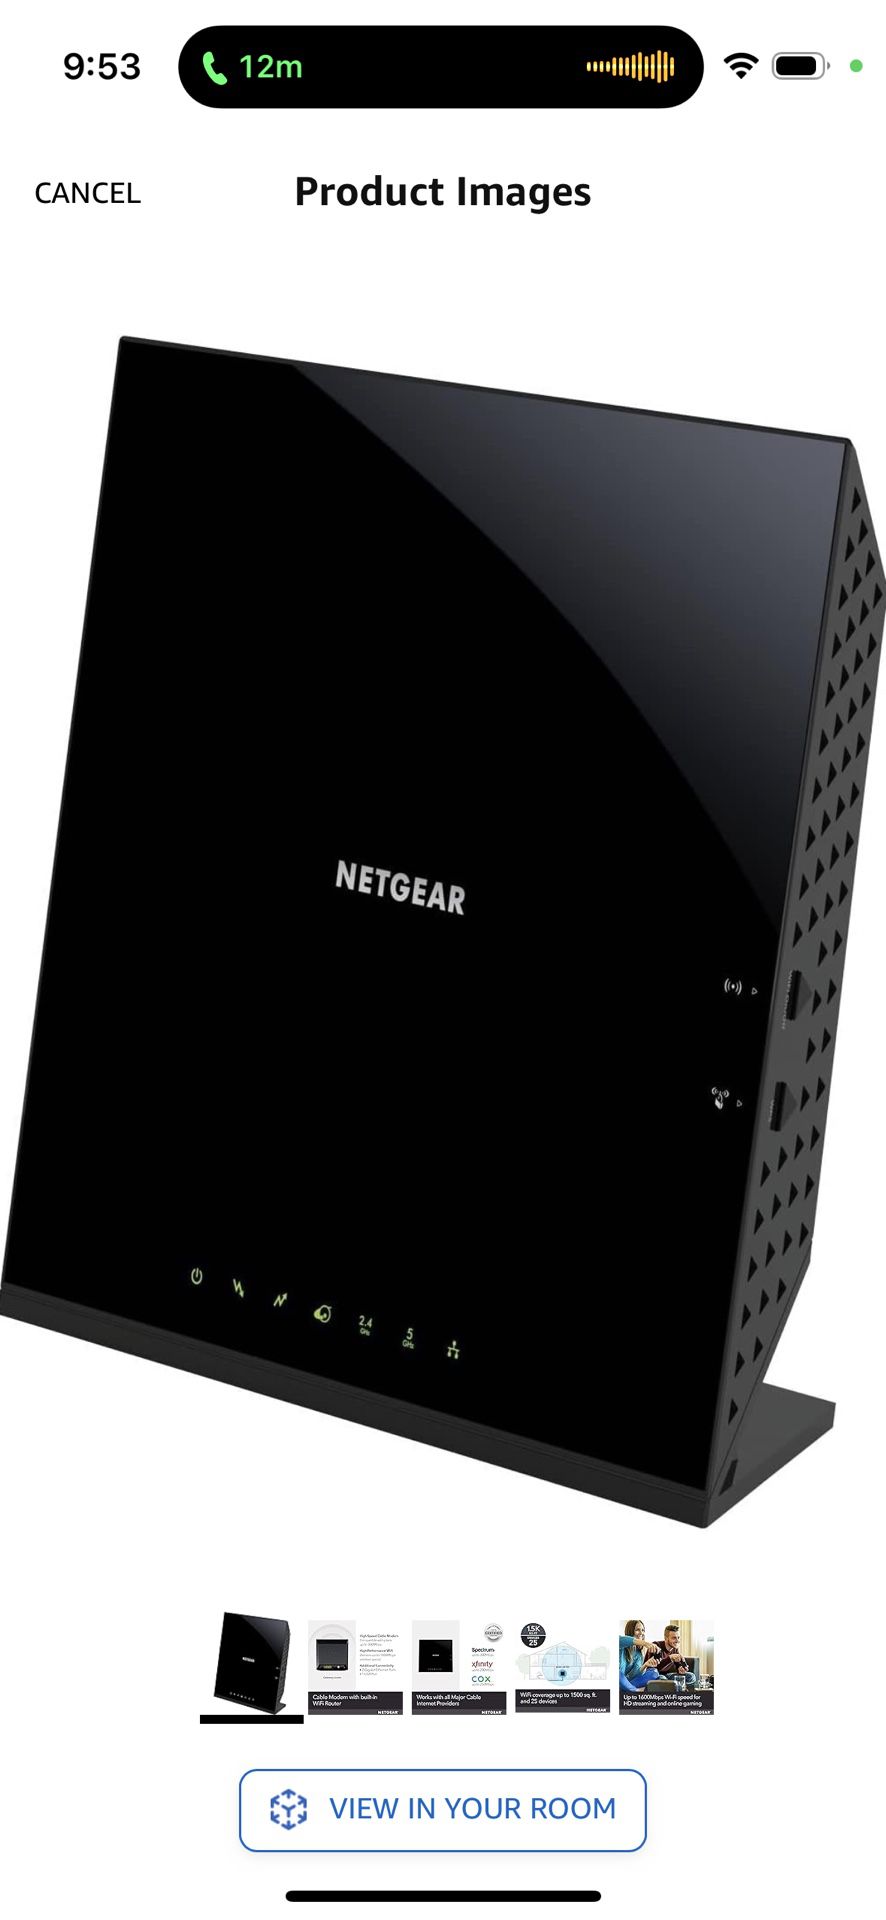 Netgear C6250-100NAS AC1600 (16x4) WiFi Cable Modem Router Combo (C6250) DOCSIS 3.0